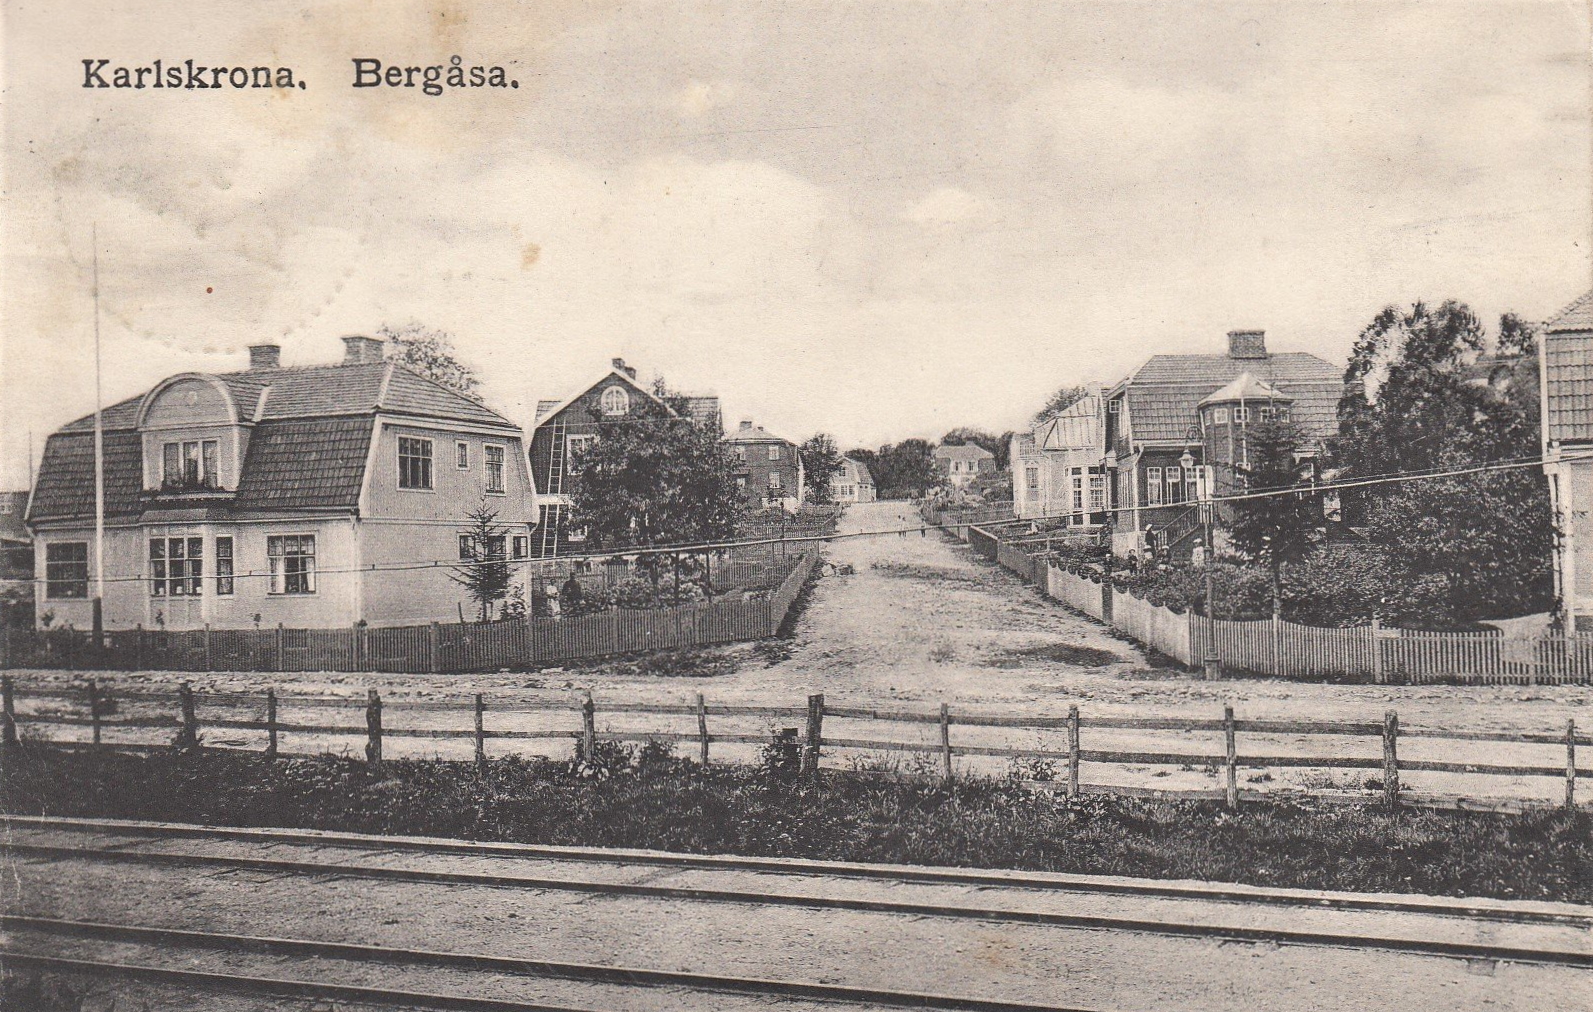 Karlskrona, Bergåsa. Korsningen Järnvägsgatan (omdöpt till Sunnavägen 1934) - Vasagatan.